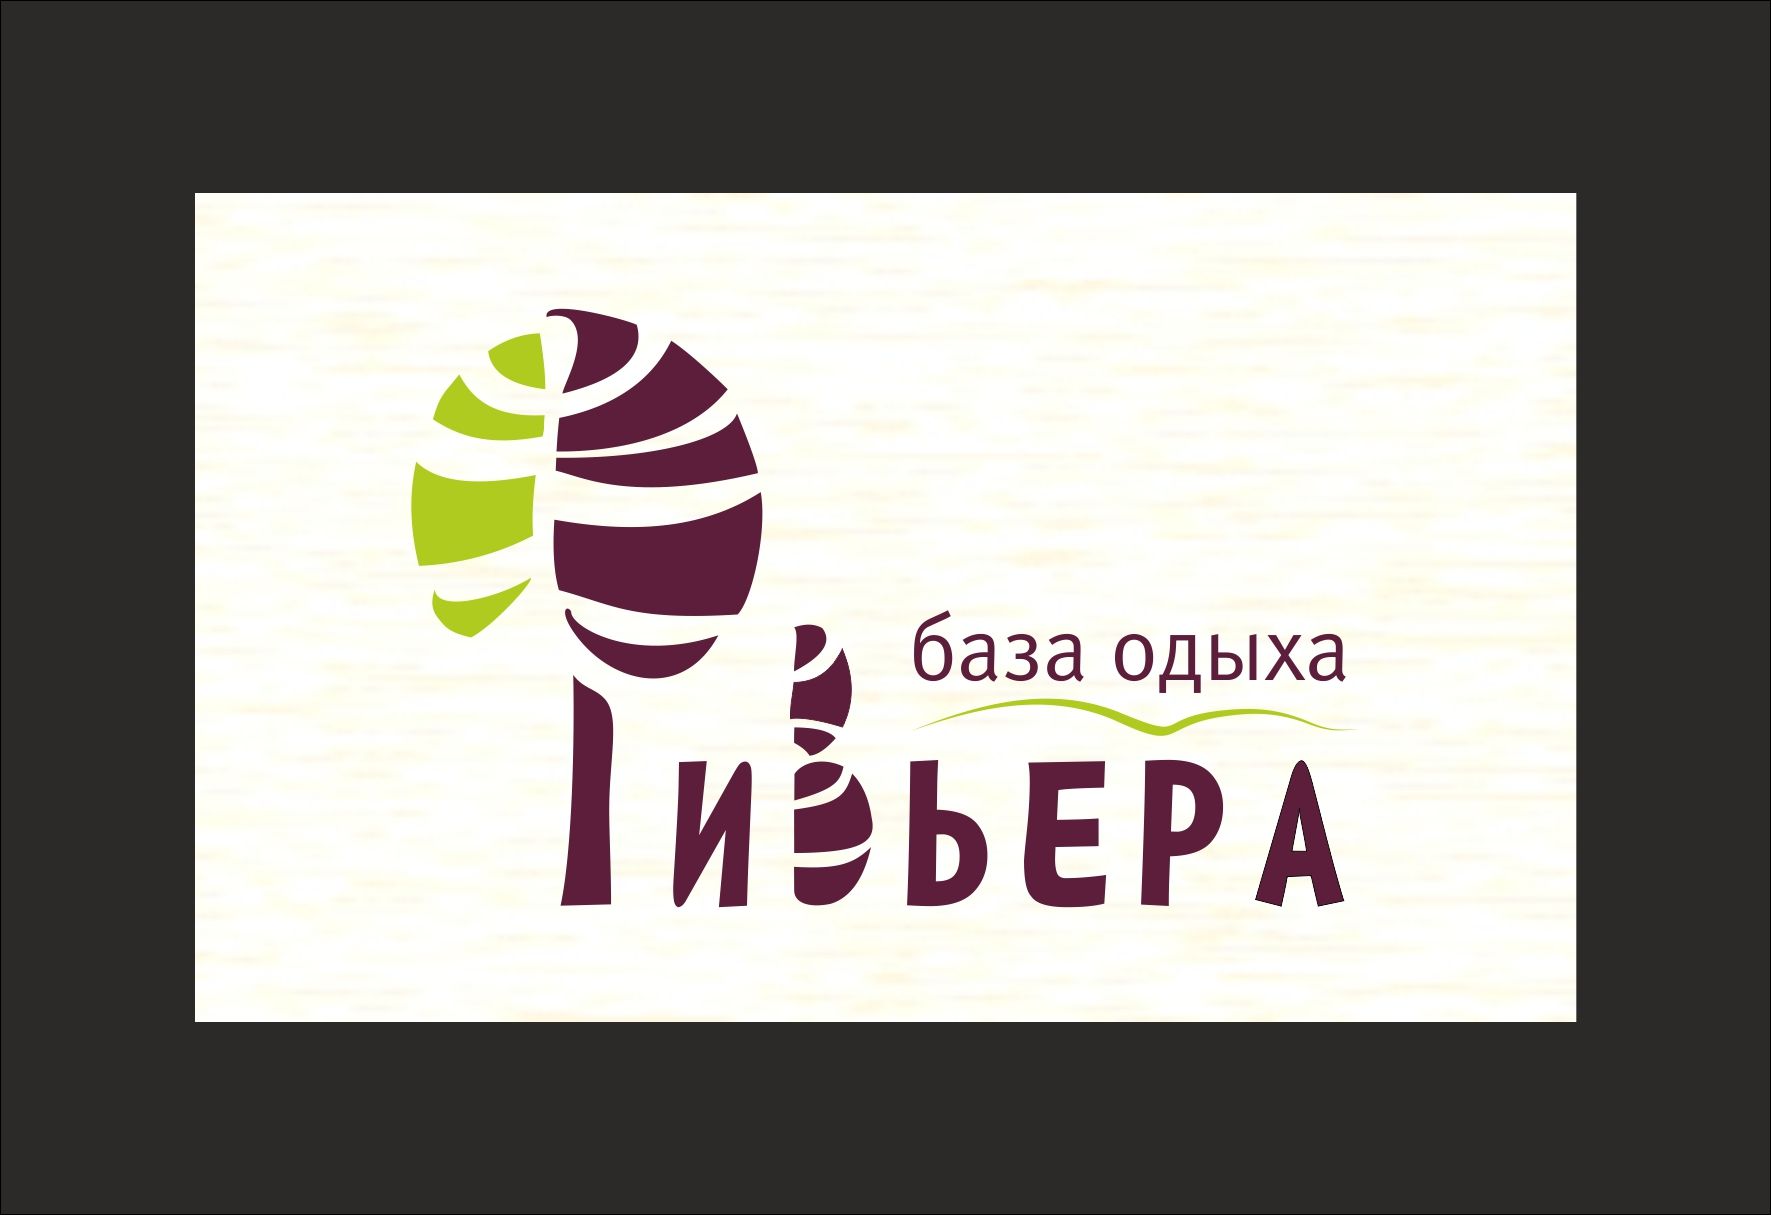 Логотип и фирменный стиль для базы отдыха  - дизайнер savinova-1977